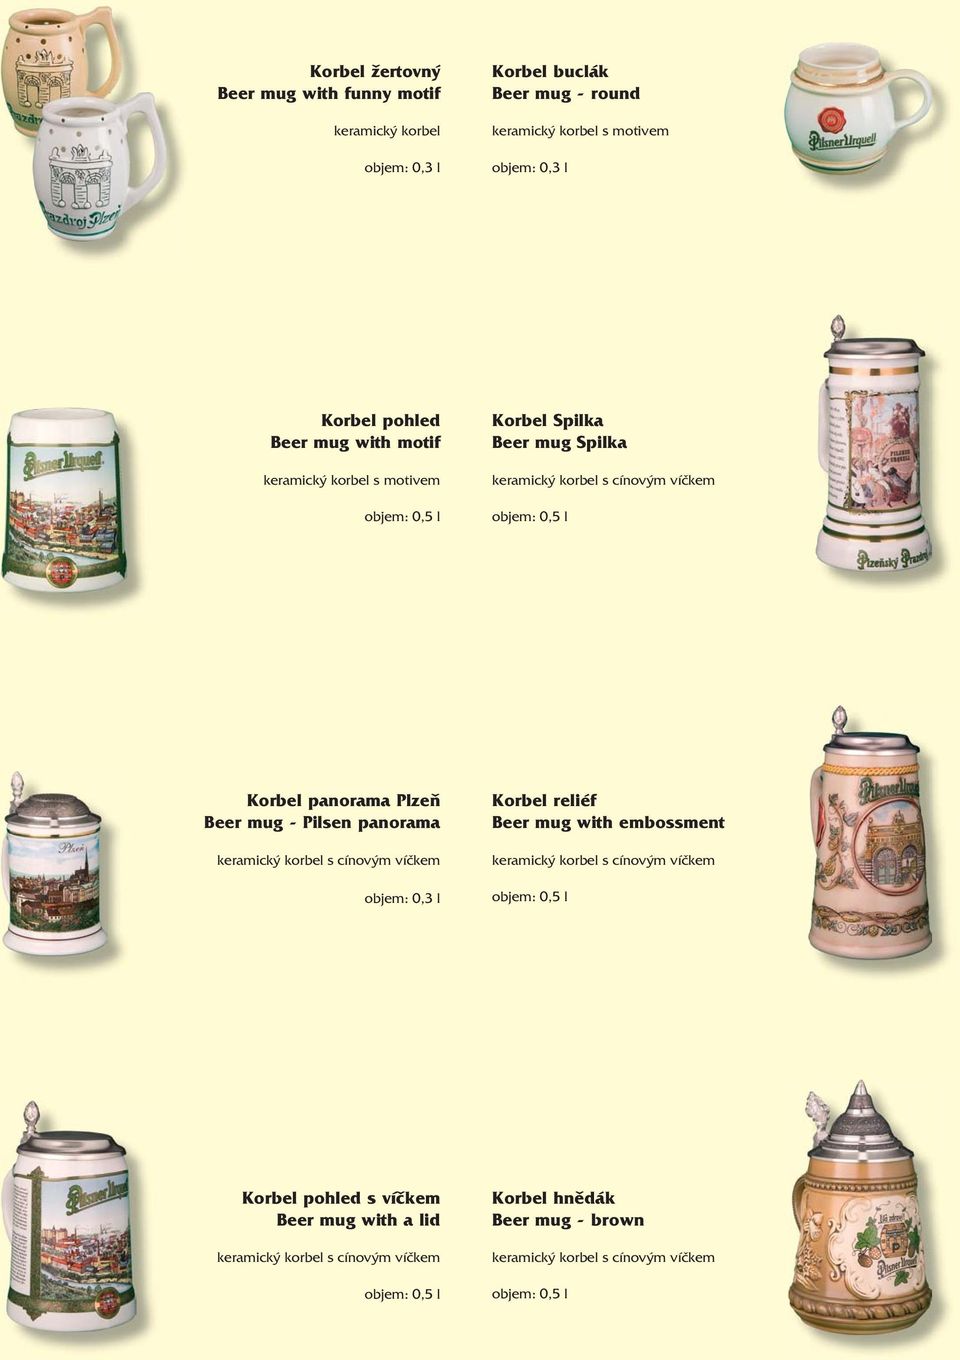 Plzeň Beer mug - Pilsen panorama keramický korbel s cínovým víčkem objem: 0,3 l Korbel reliéf Beer mug with embossment keramický korbel s